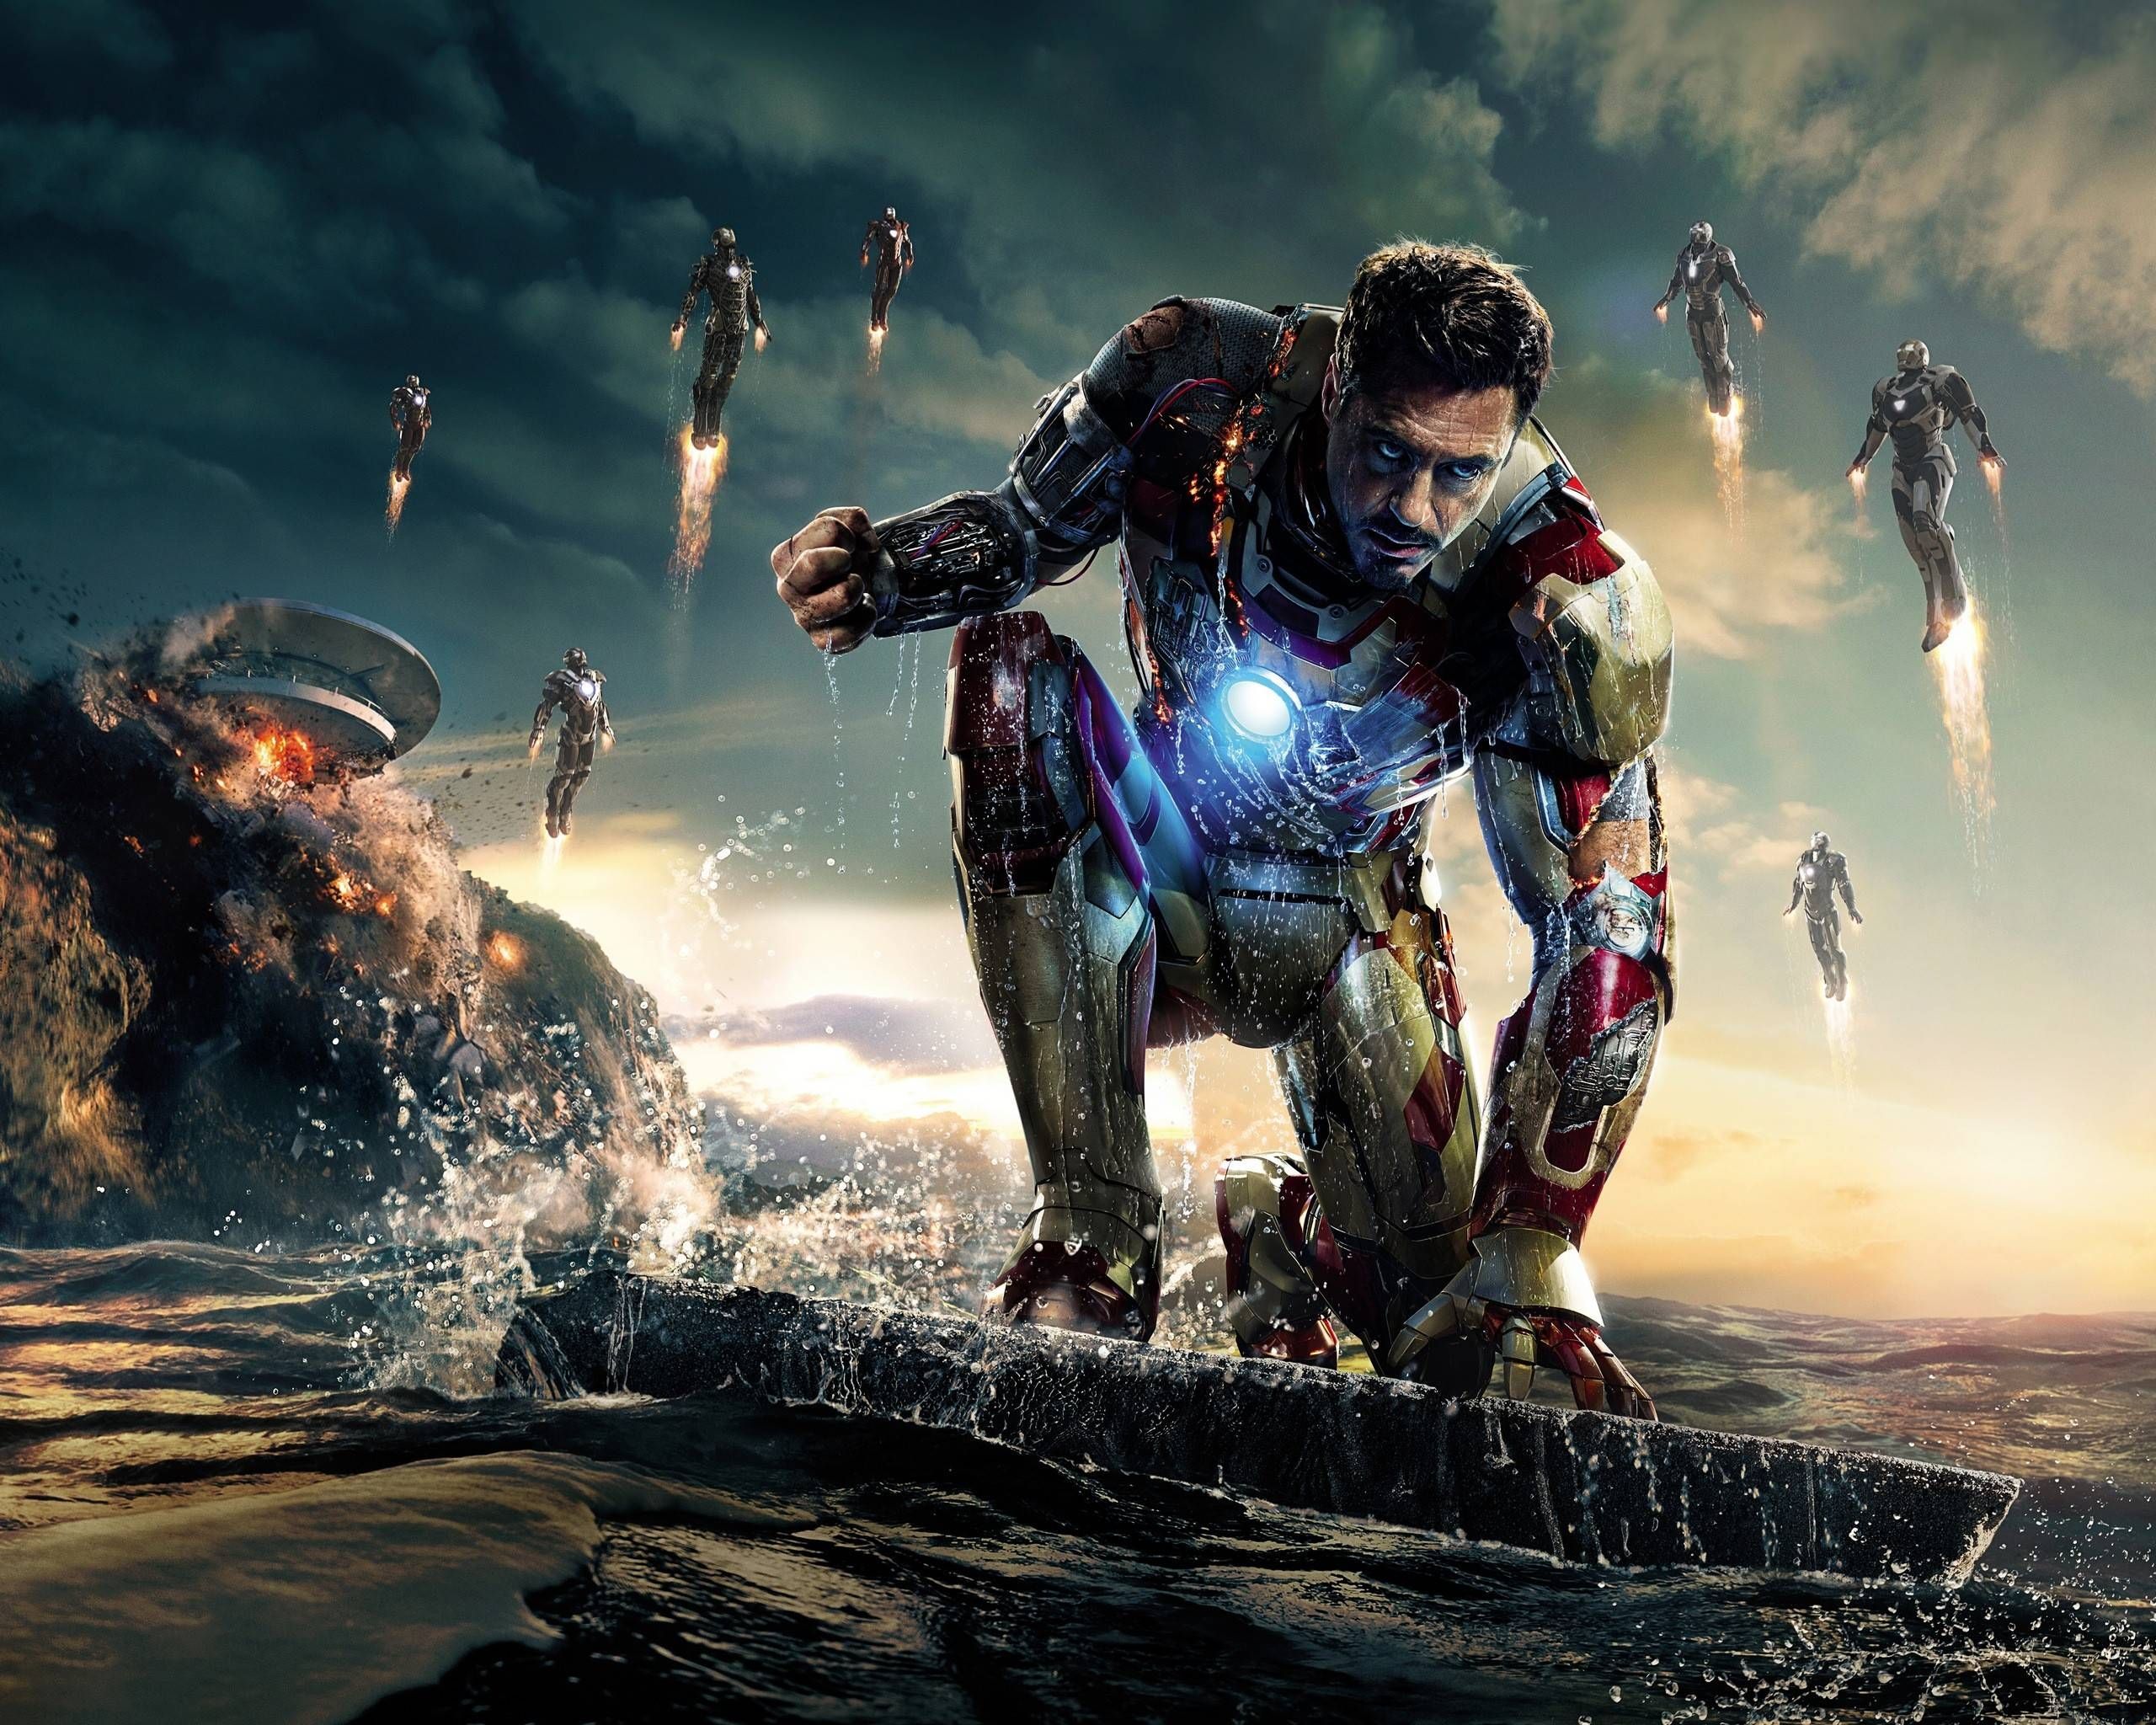 Iron Man MCU: Iron Man là một trong những nhân vật được yêu thích nhất trong vũ trụ điện ảnh Marvel (MCU). Với phong cách lạc quan và sự kiên định của mình, anh ta đã chiến đấu cùng đồng minh trong nhiều cuộc phiêu lưu đầy kịch tính. Xem các hình ảnh liên quan để khám phá thêm về chàng Người Sắt.